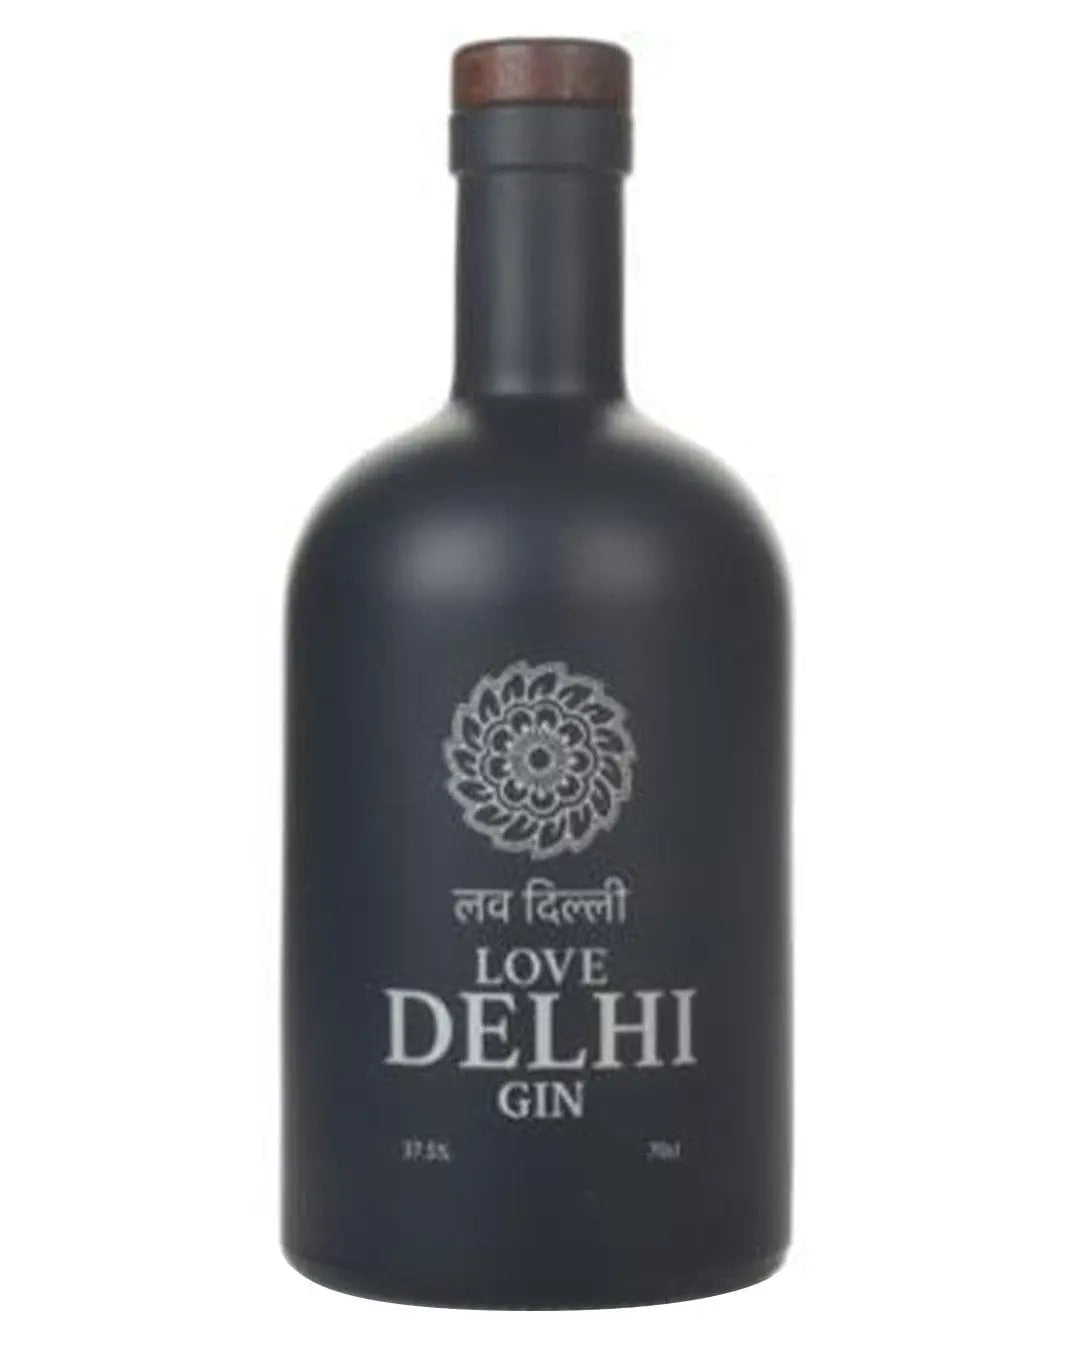 Love Delhi Gin, 70 cl Gin